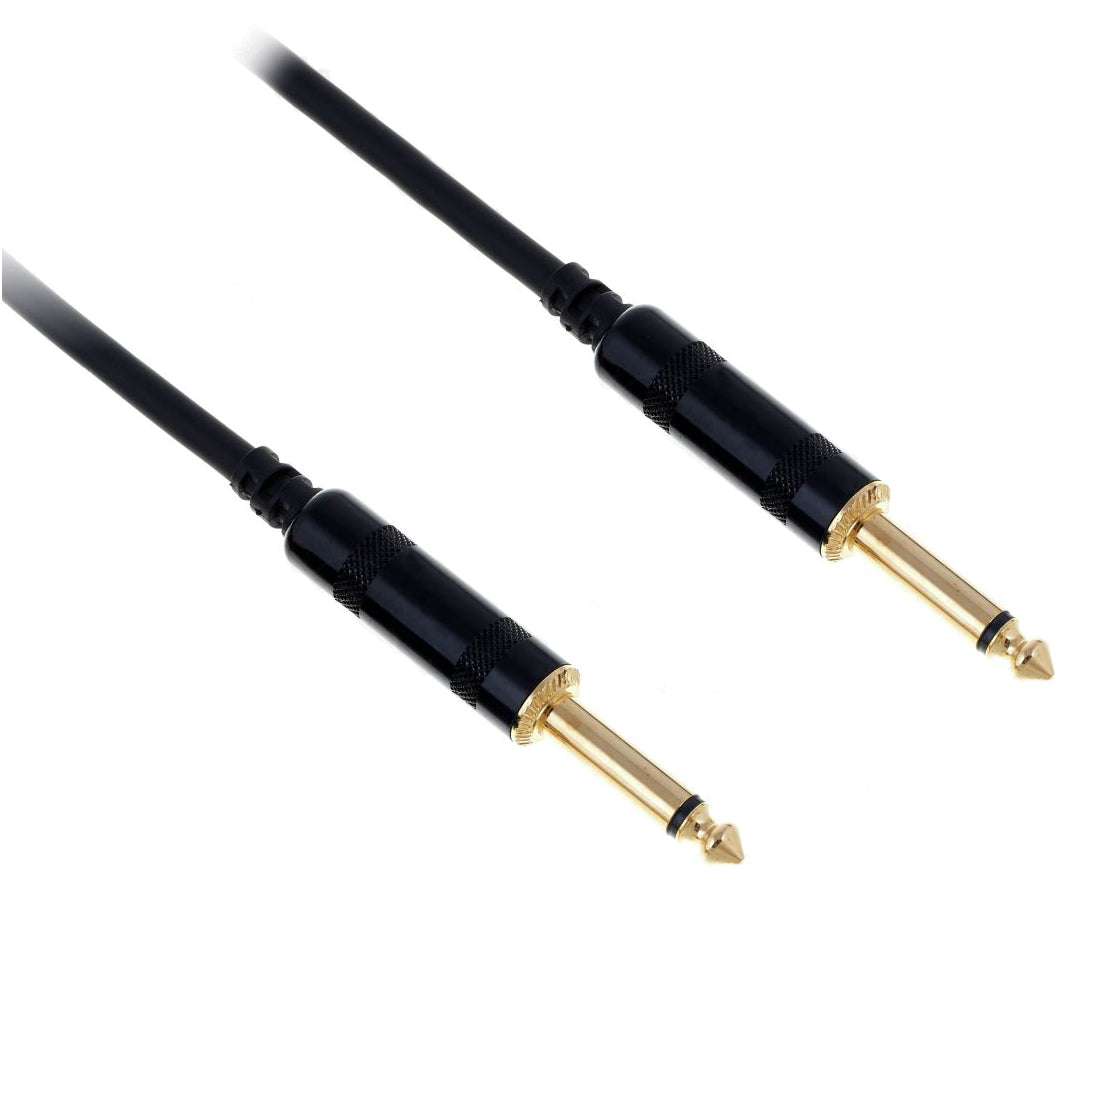 GBC Cavo audio professionale con connettori mono da 6,3 mm, per mixer, amplificatori e microfoni, 20 m